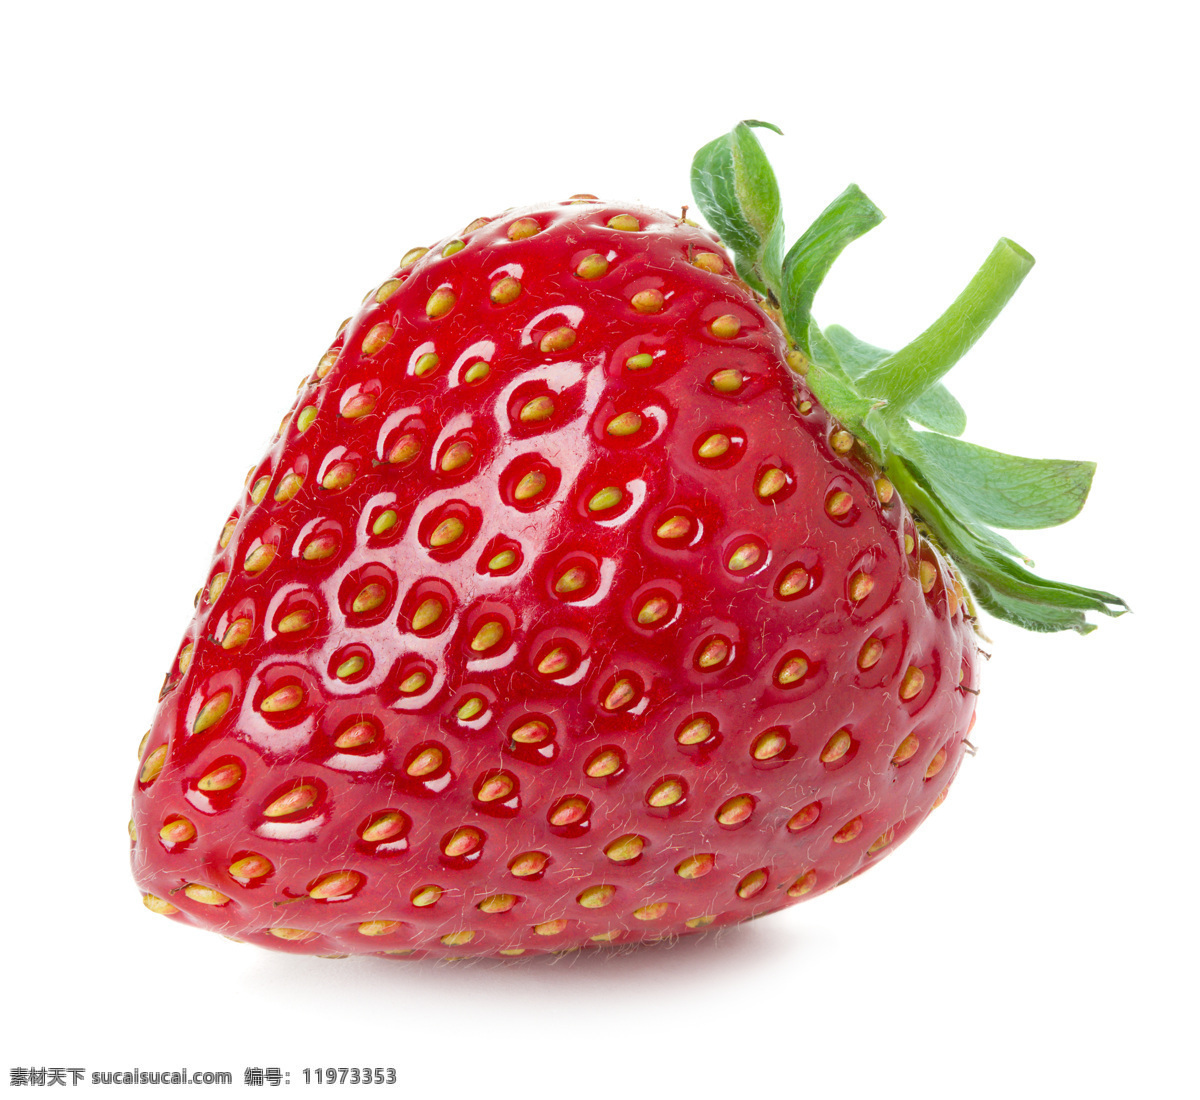 新鲜草莓 牛奶草莓 大草莓 草莓图片 美草莓 红草莓 水果 生物世界